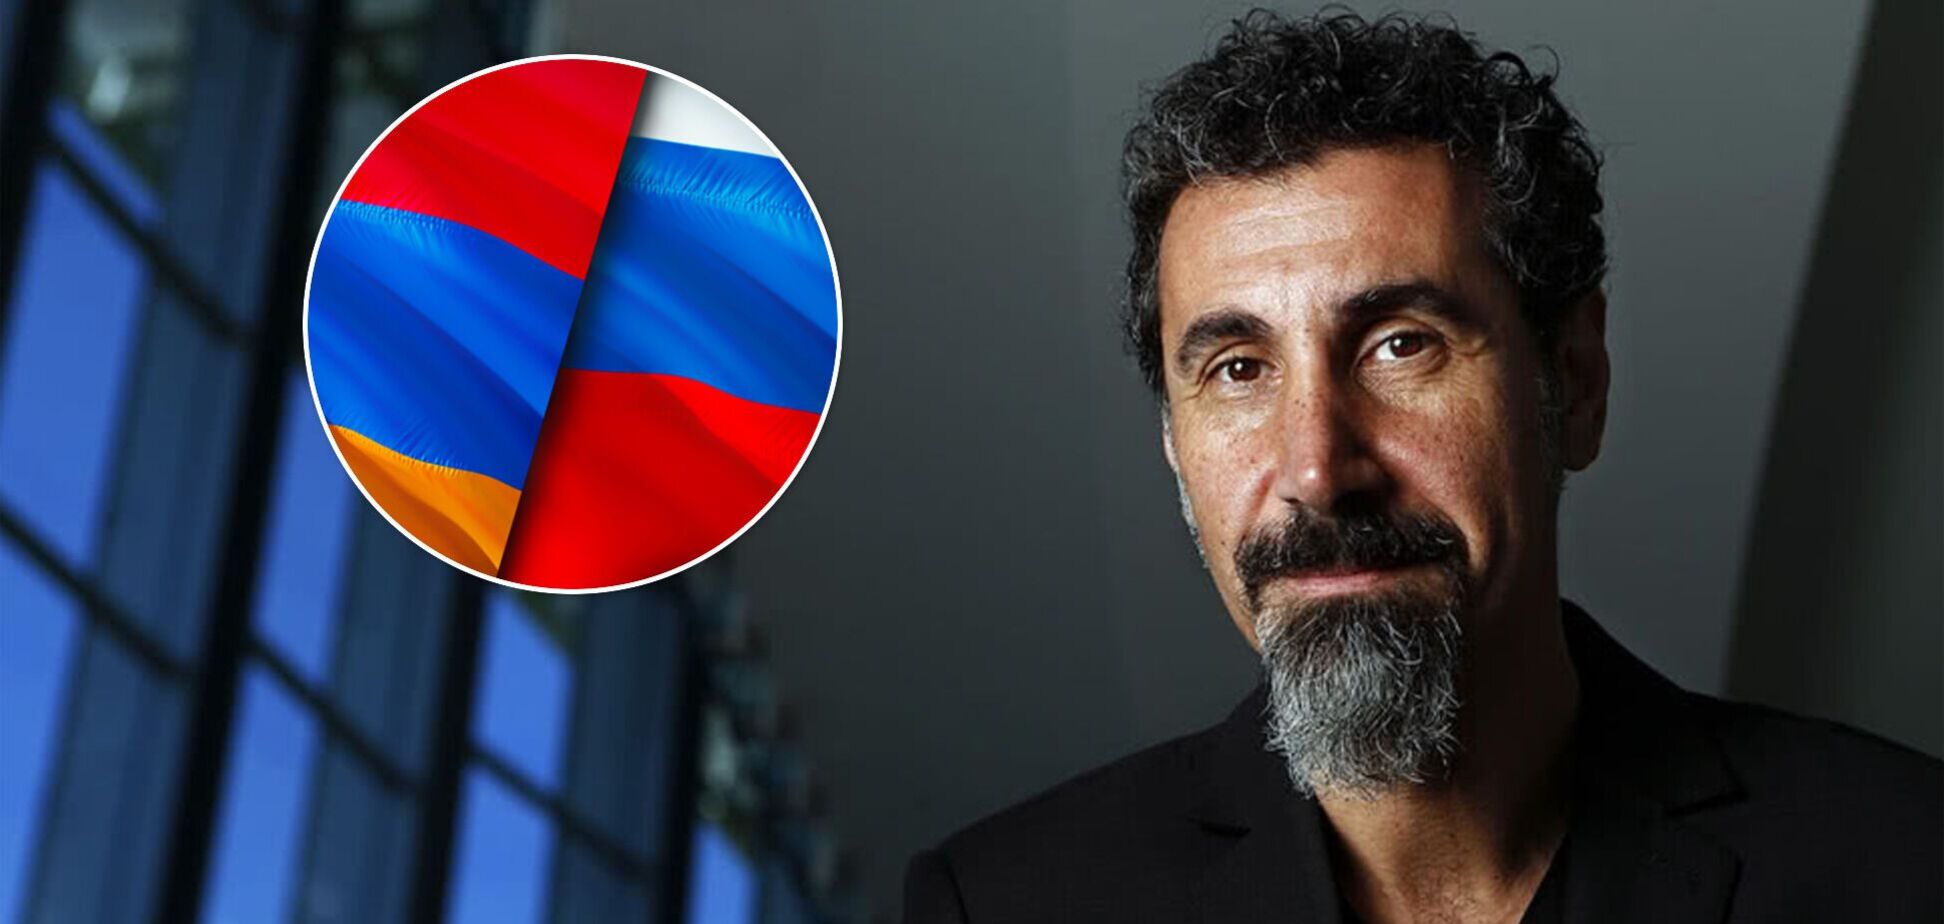 Солист System of a Down Серж Танкян предложил России напасть на Армению: его послали вслед за кораблем